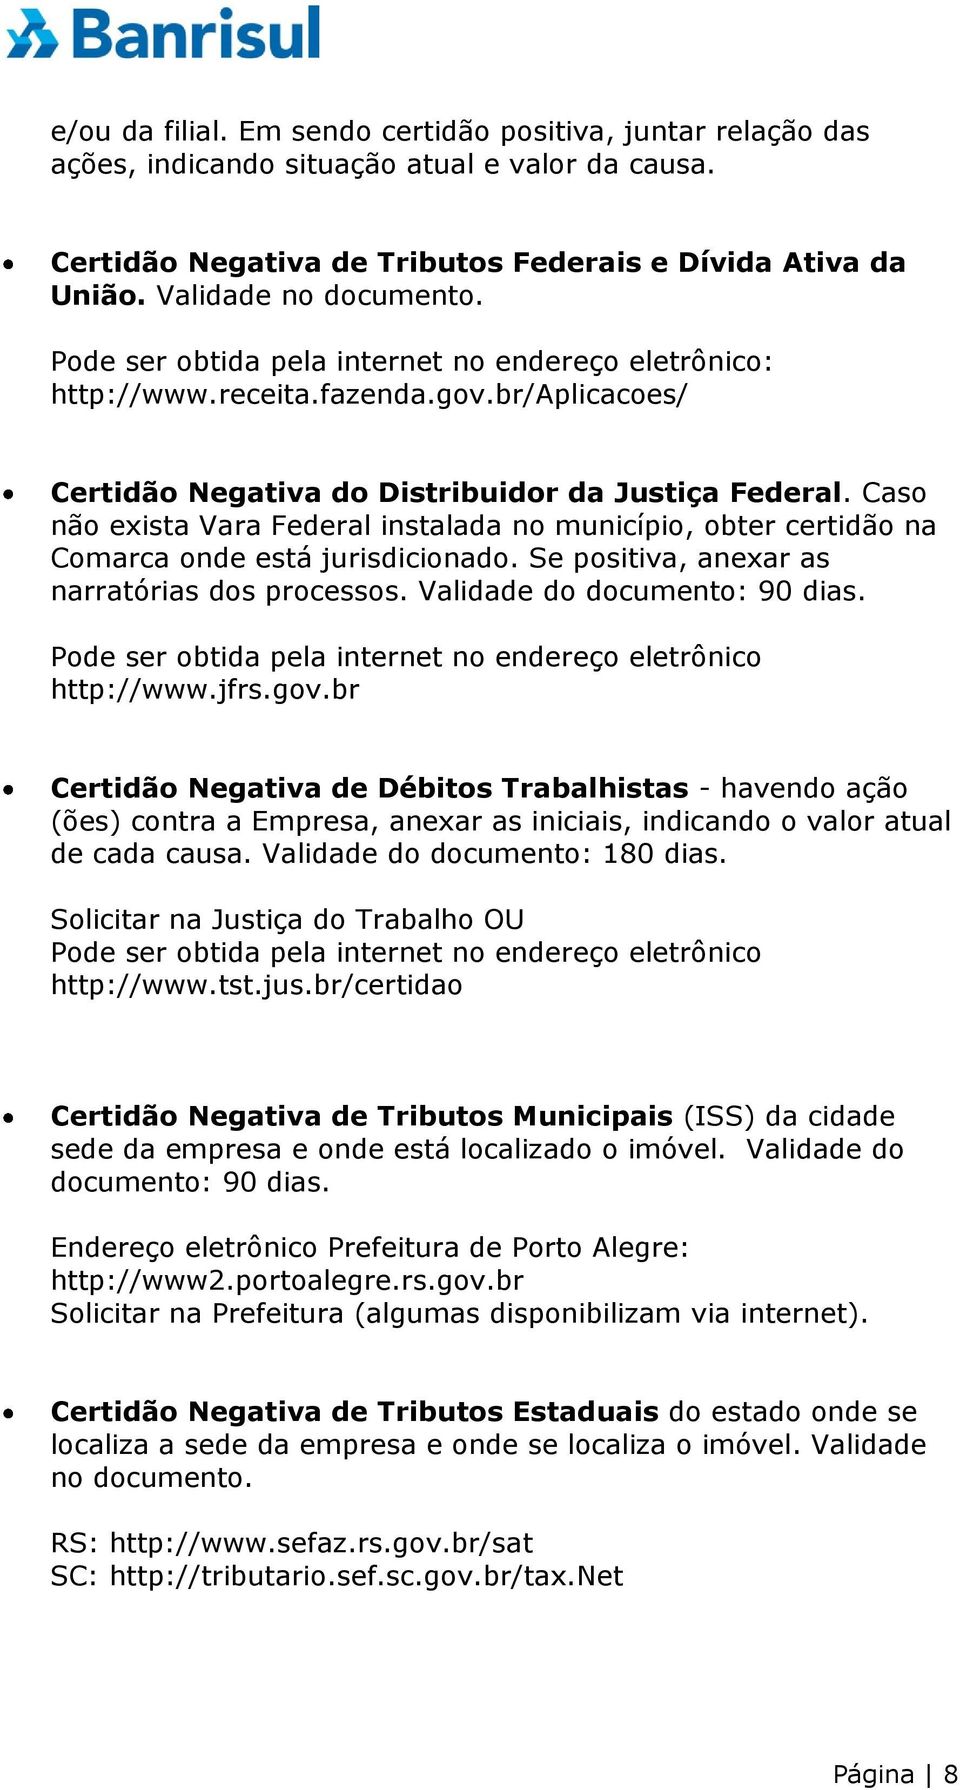 Caso não exista Vara Federal instalada no município, obter certidão na Comarca onde está jurisdicionado. Se positiva, anexar as narratórias dos processos. Validade do documento: 90 dias. http://www.